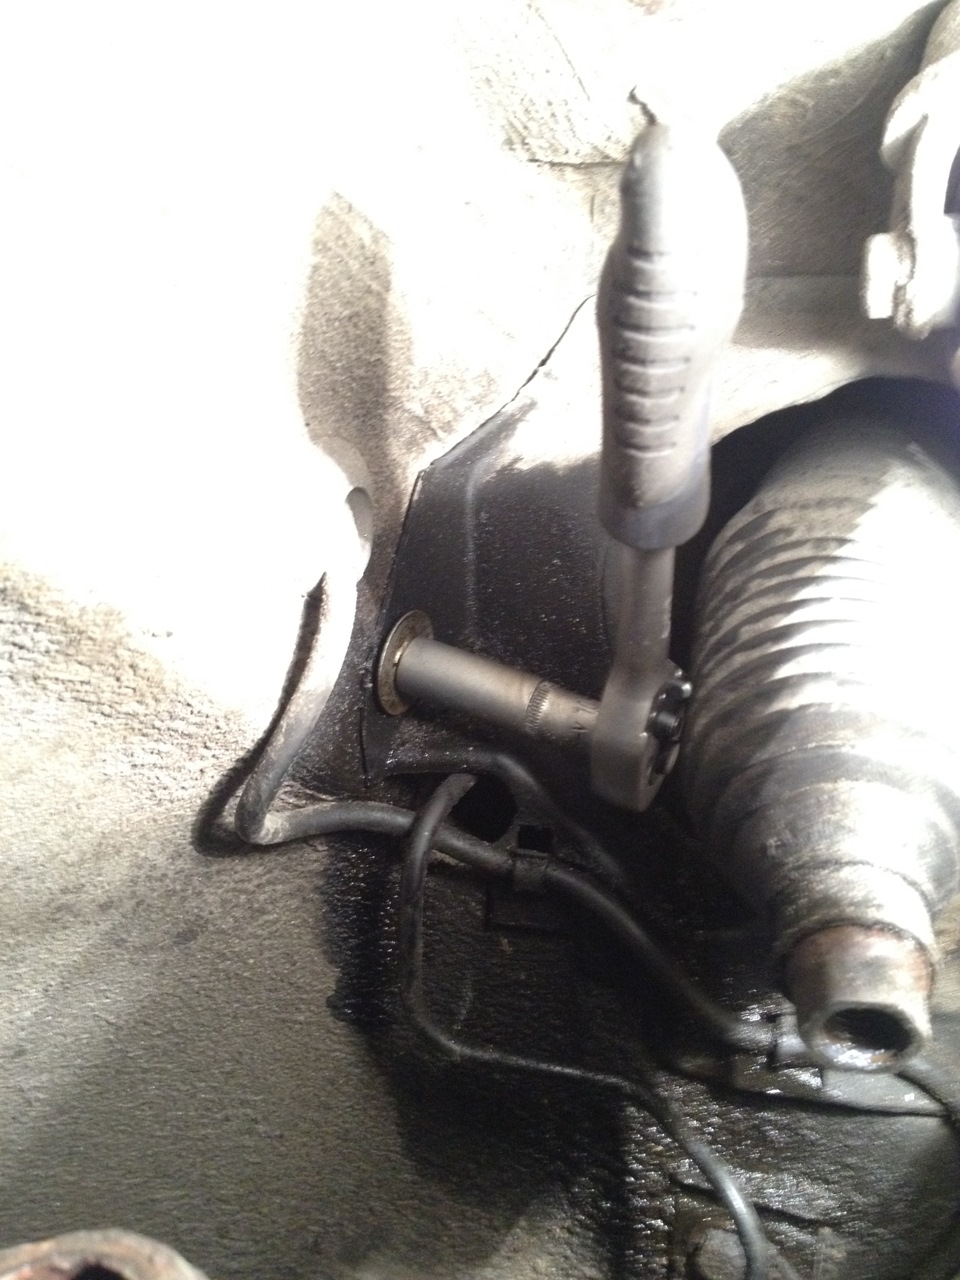 Пыльник пассат б5. Пыльник рейки Passat b5+. Пыльник рейки Volkswagen Passat 1.8 ABS. Пассат б5 1998 1.8 пыльник рулевой тяги. Пассат б5 1998 пыльник рулевой тяги левый.